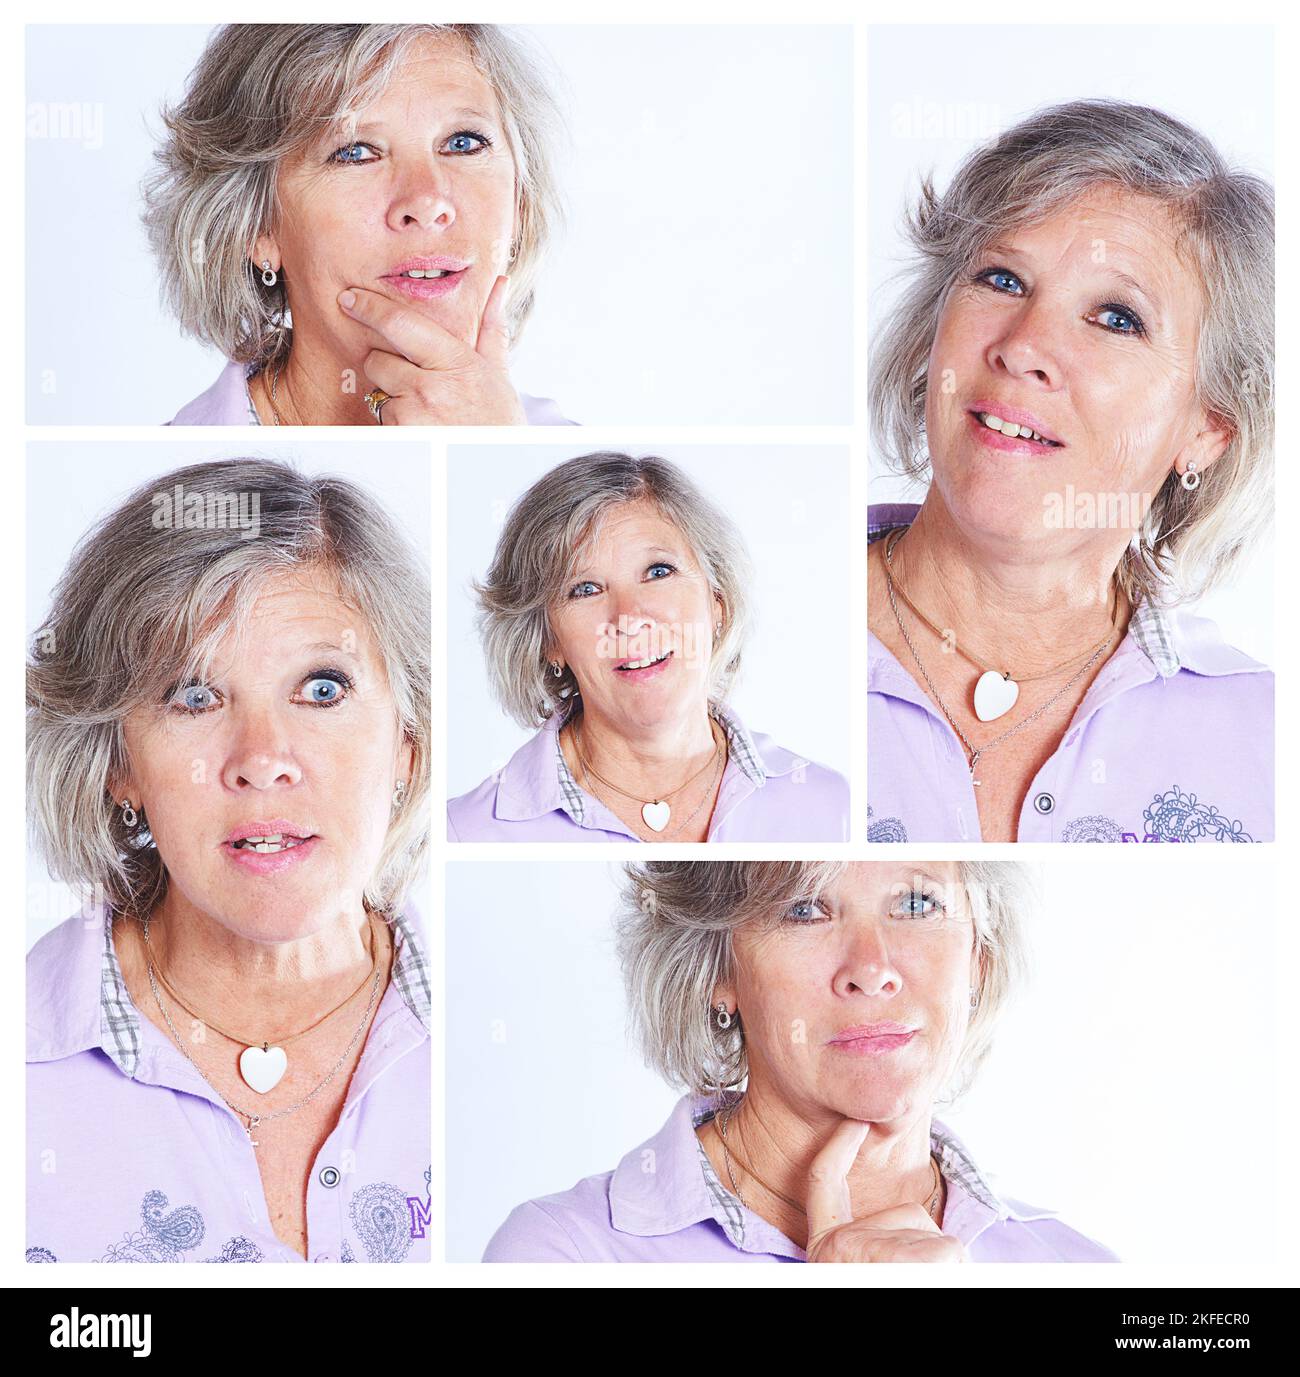 Das ist ein ausdrucksstarkes Gesicht. Zusammengesetzte Aufnahme einer Frau, die verschiedene Gesichtsausdrücke macht. Stockfoto